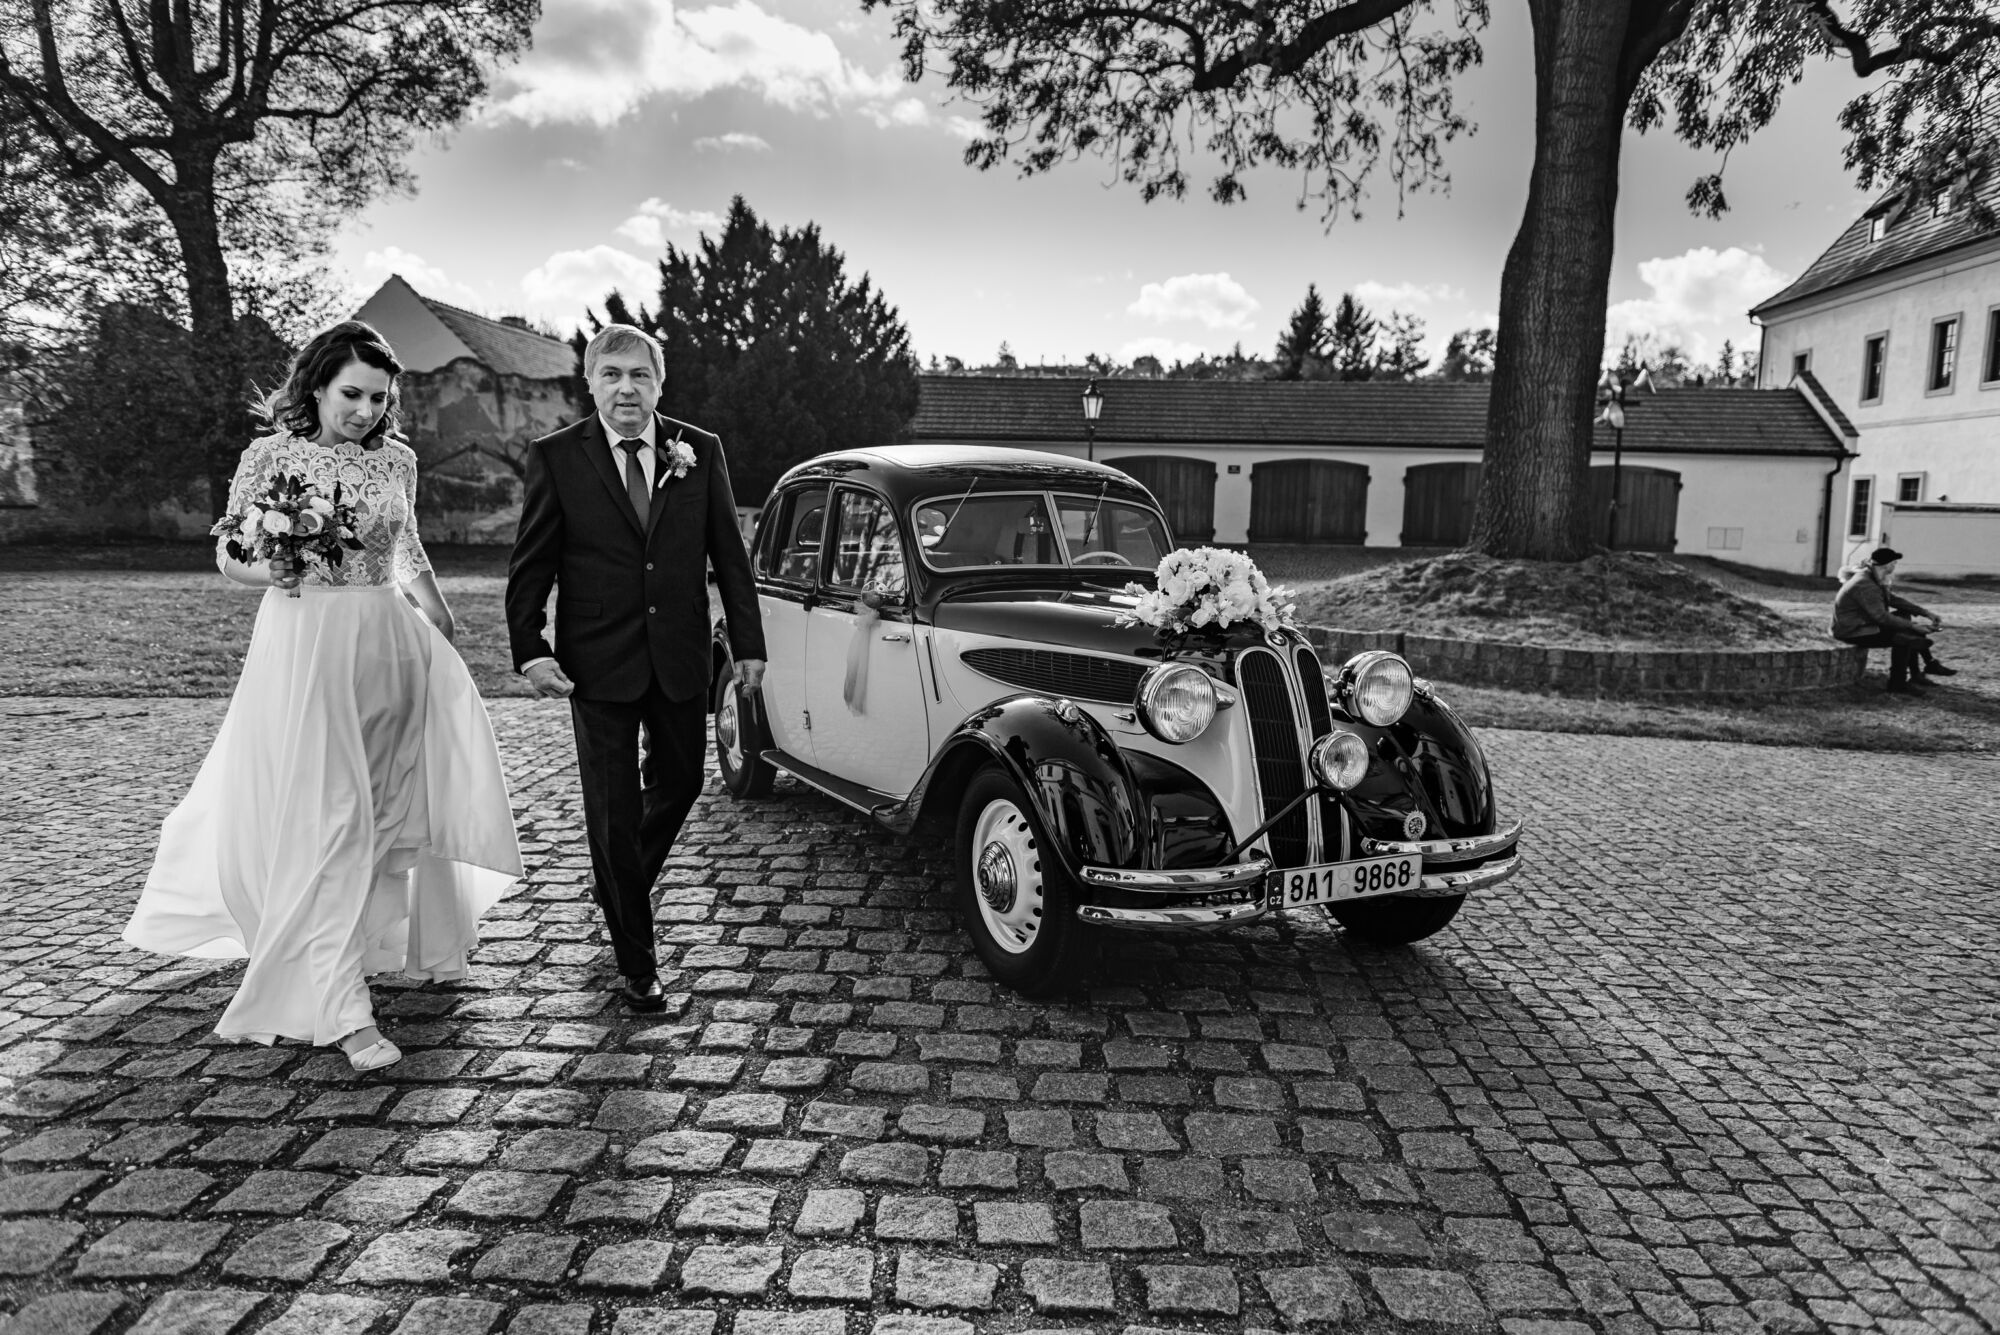 Svatební fotky před obřadem jako je tato, pěkně vystihují atmosféru dne, svatební fotograf Praha